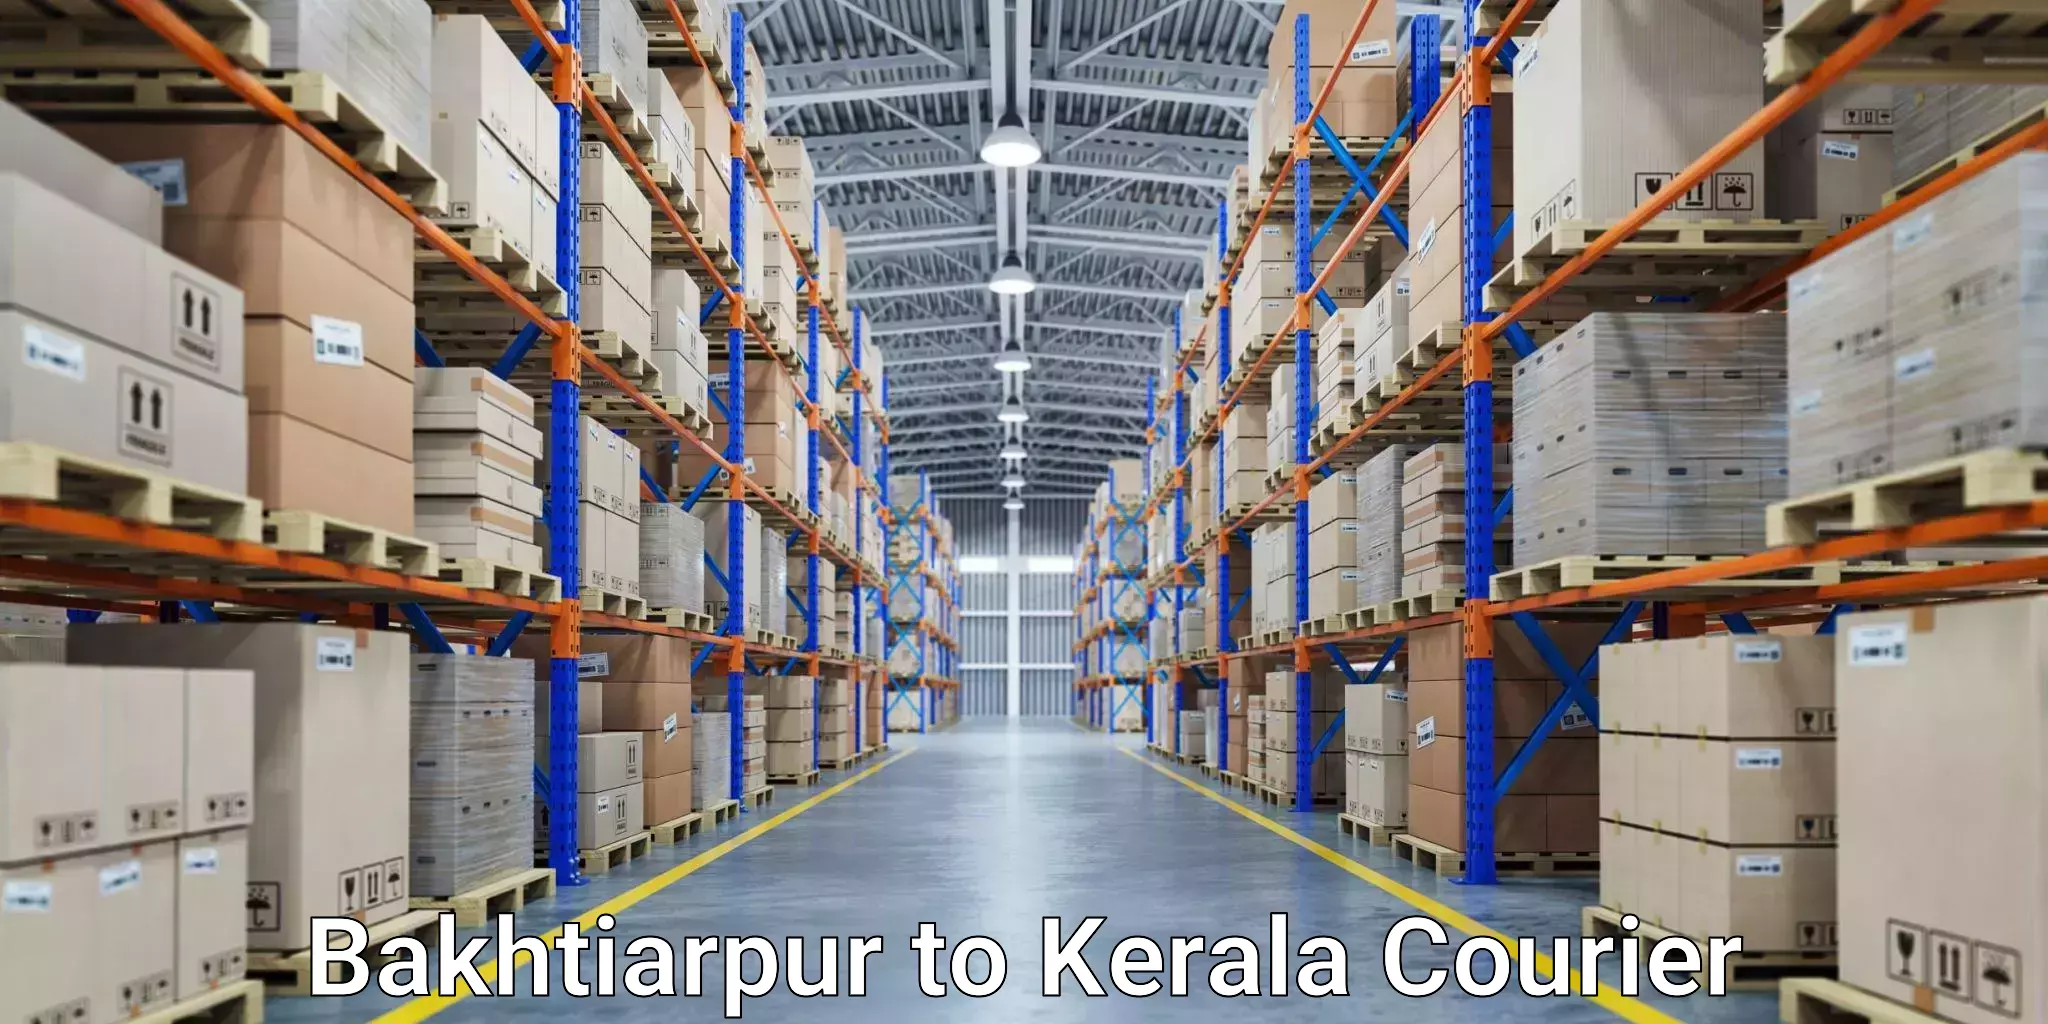 Express logistics providers Bakhtiarpur to Kerala